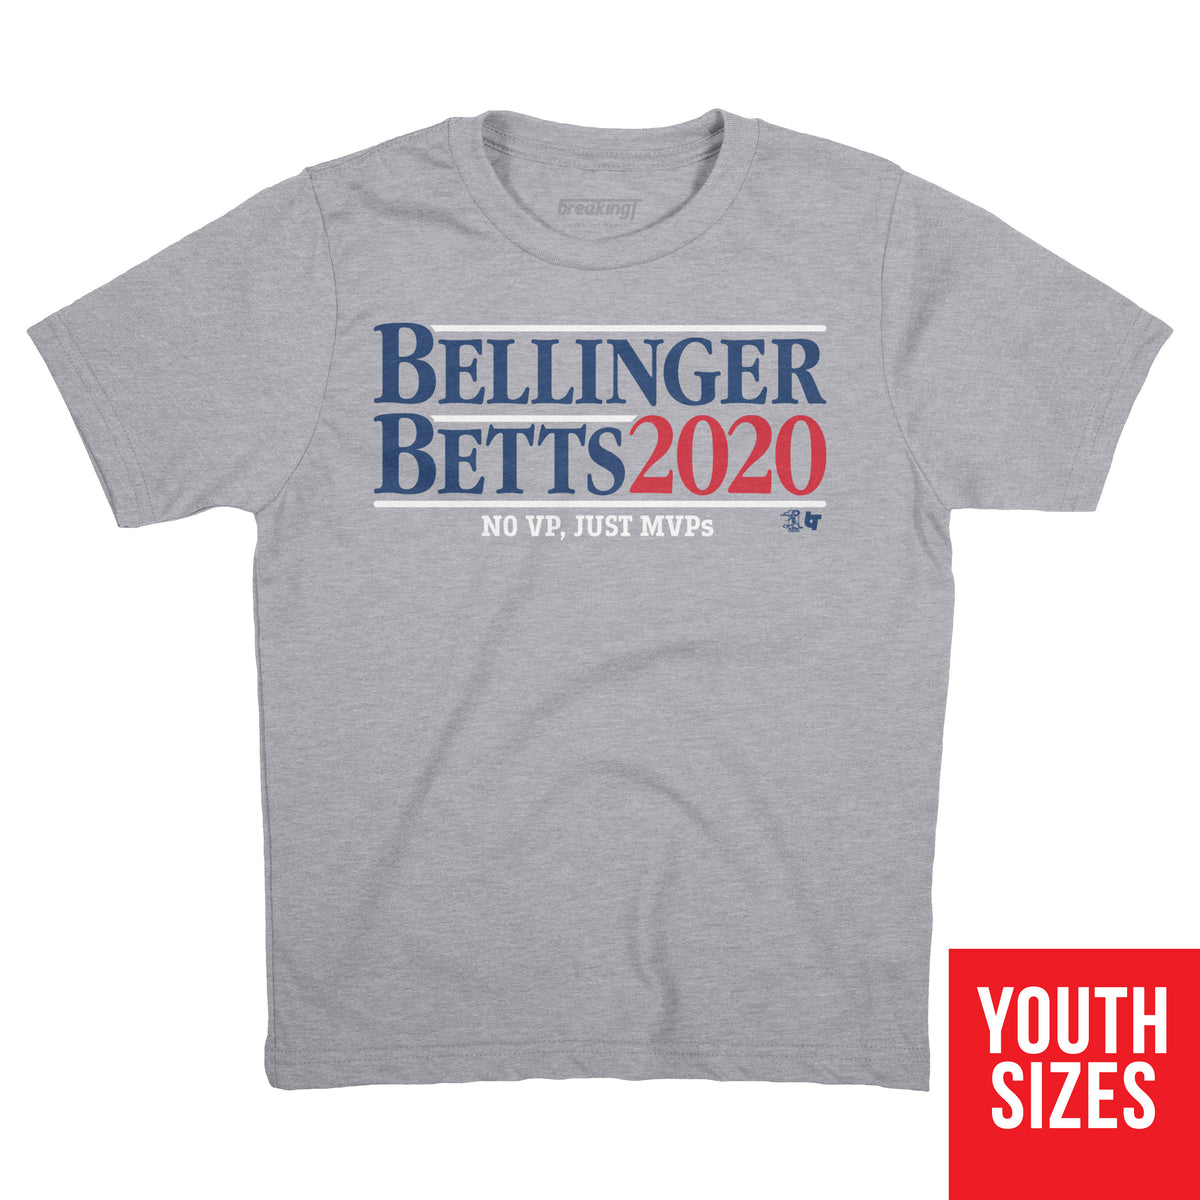 Bellinger Betts 2020 Shirt + Hoodie, L.A. - MLBPA Licensed -BreakingT